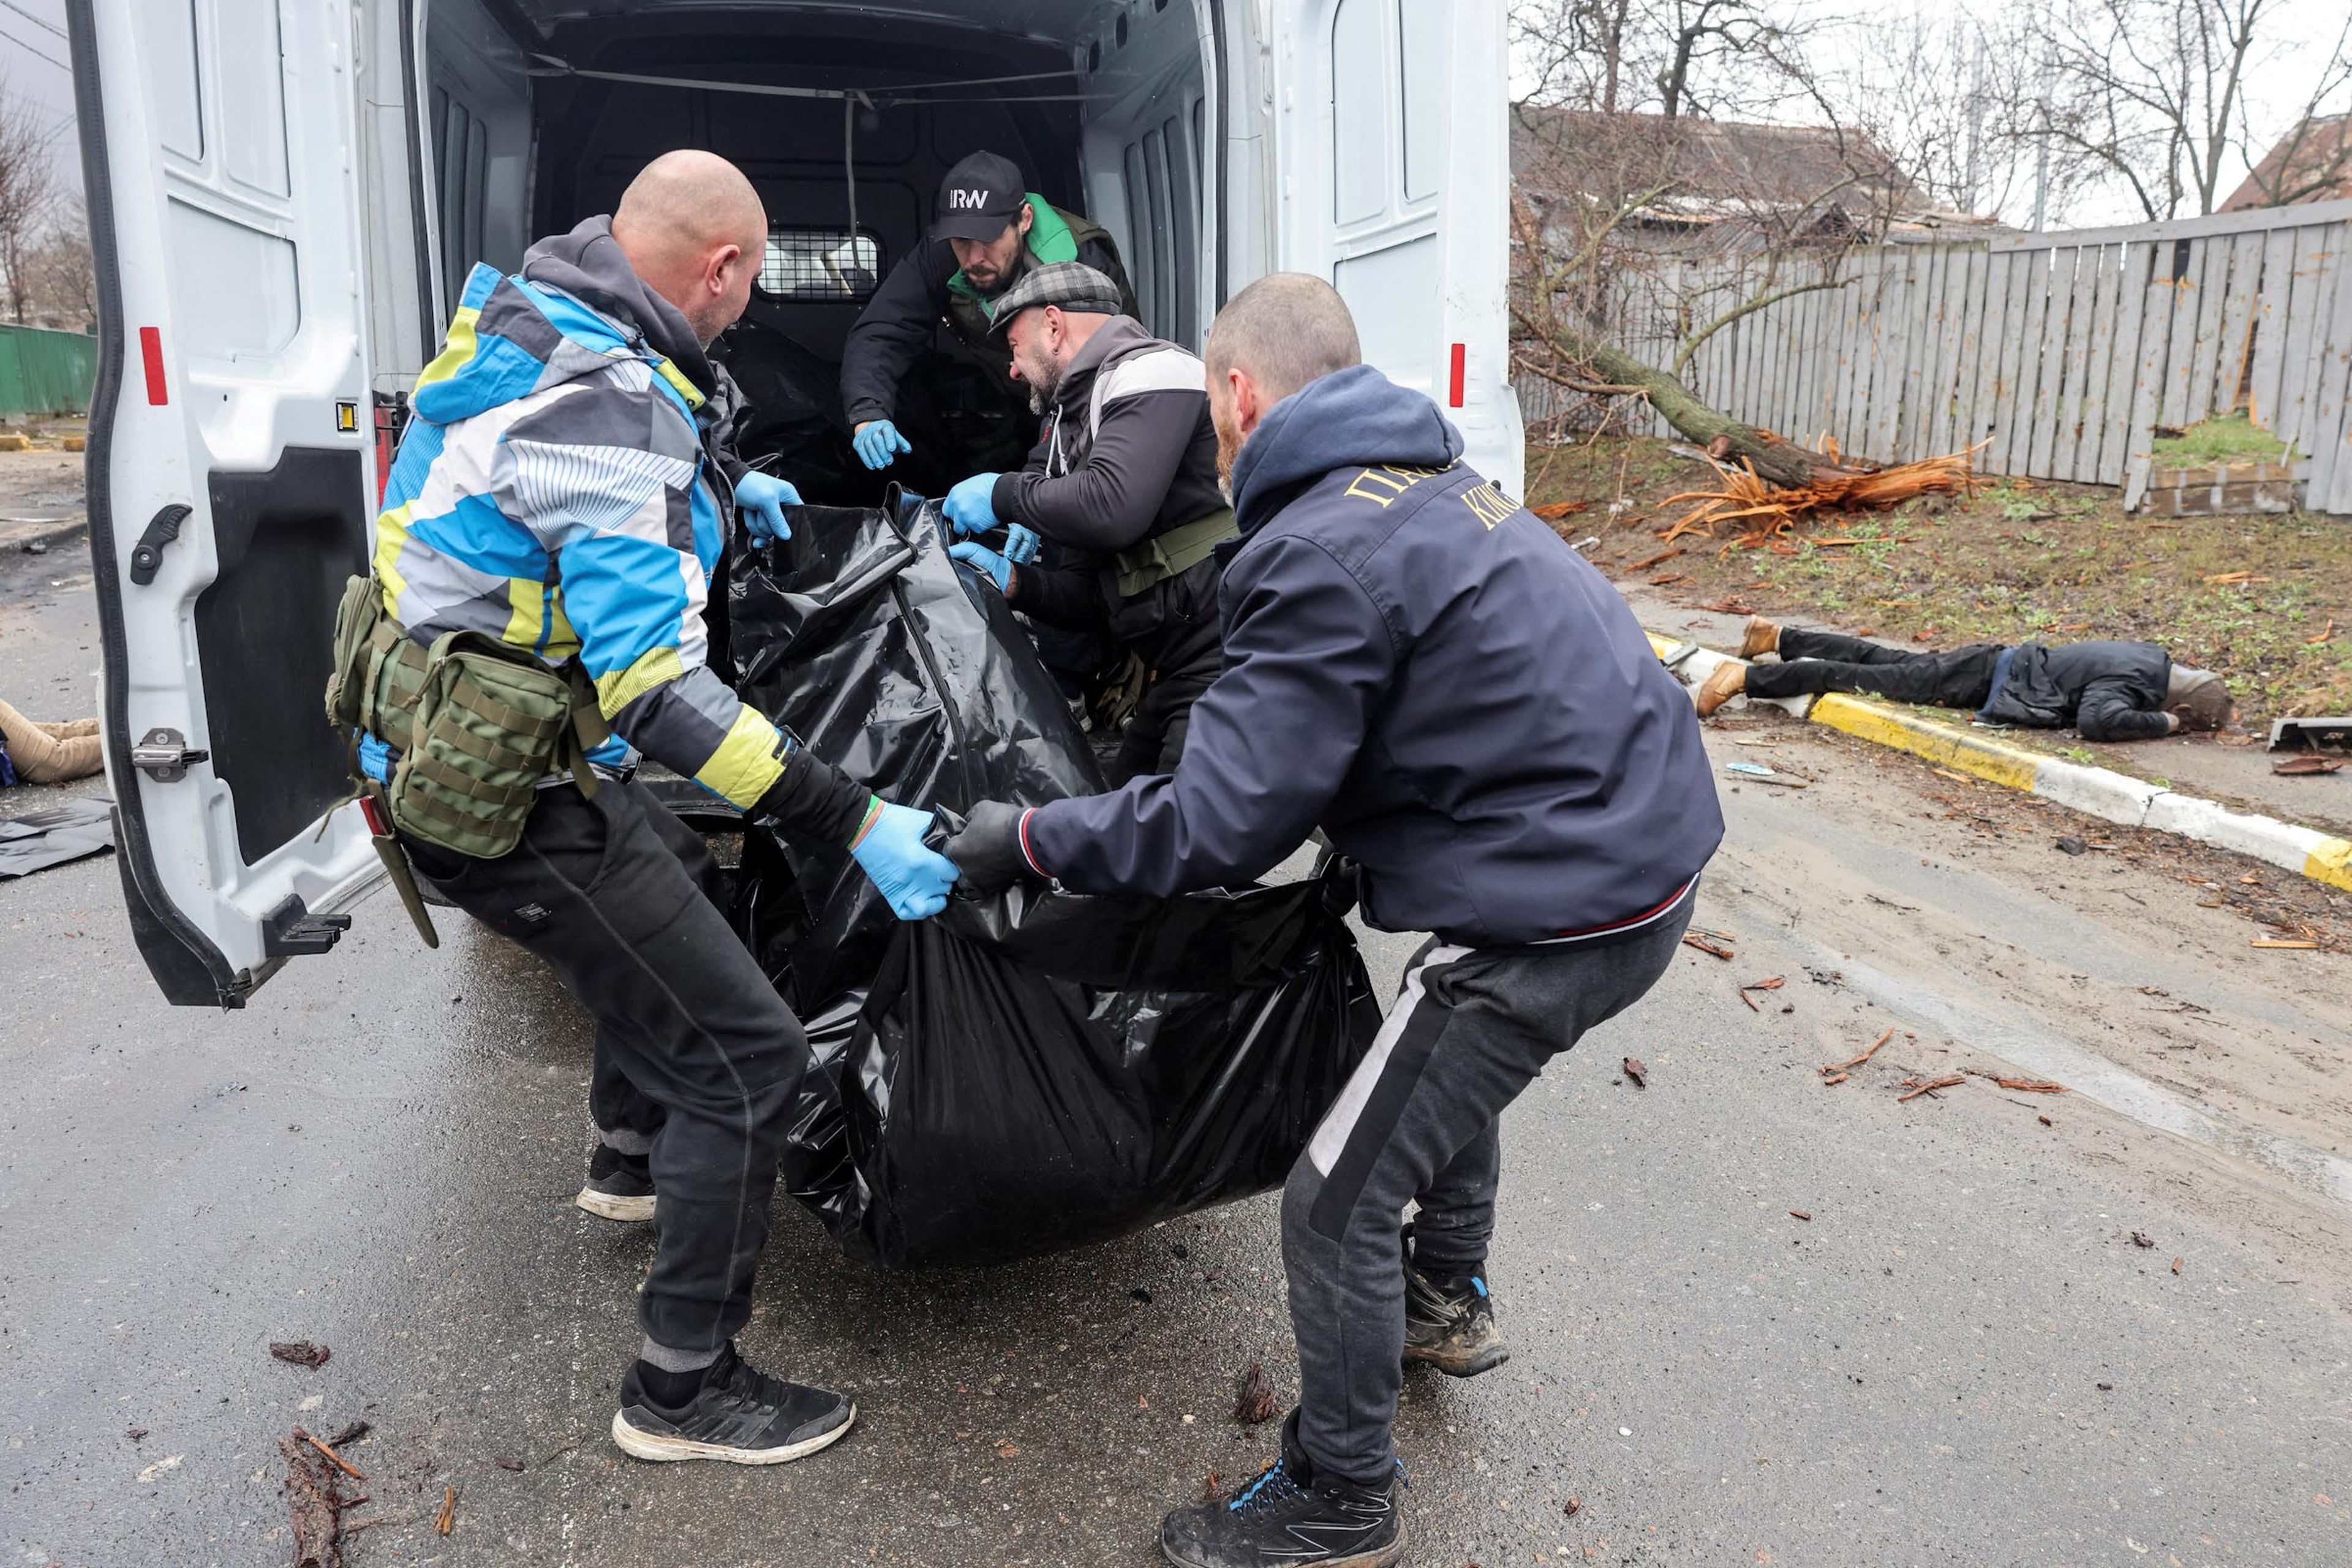 Voluntarios cargan en una furgoneta el cuerpo de un civil, que según los residentes fue asesinado por soldados rusos, en medio de la invasión rusa a Ucrania, en Bucha.